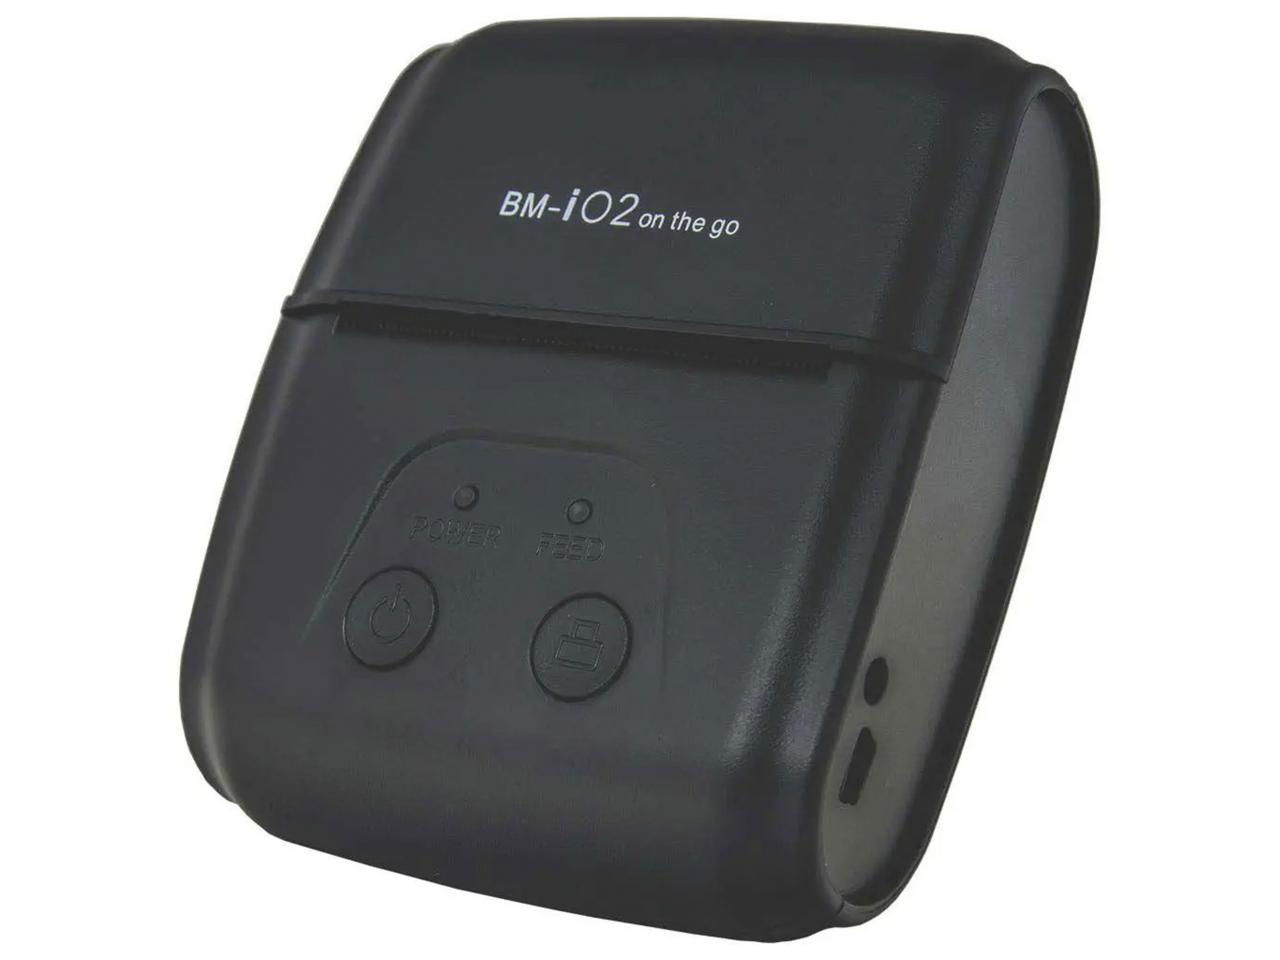 Mobilní tiskárna pokladních účtenek BIRCH BM-i02